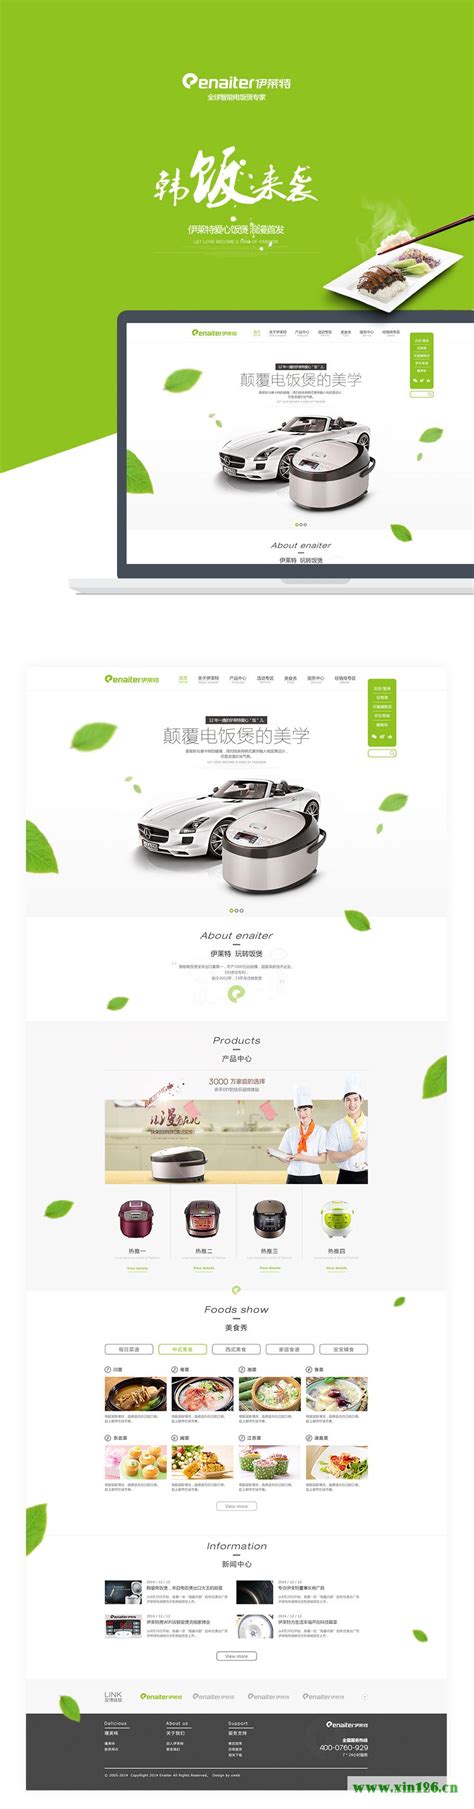 2套简约漂亮的绿色网站页面设计欣赏 | 中国网页设计